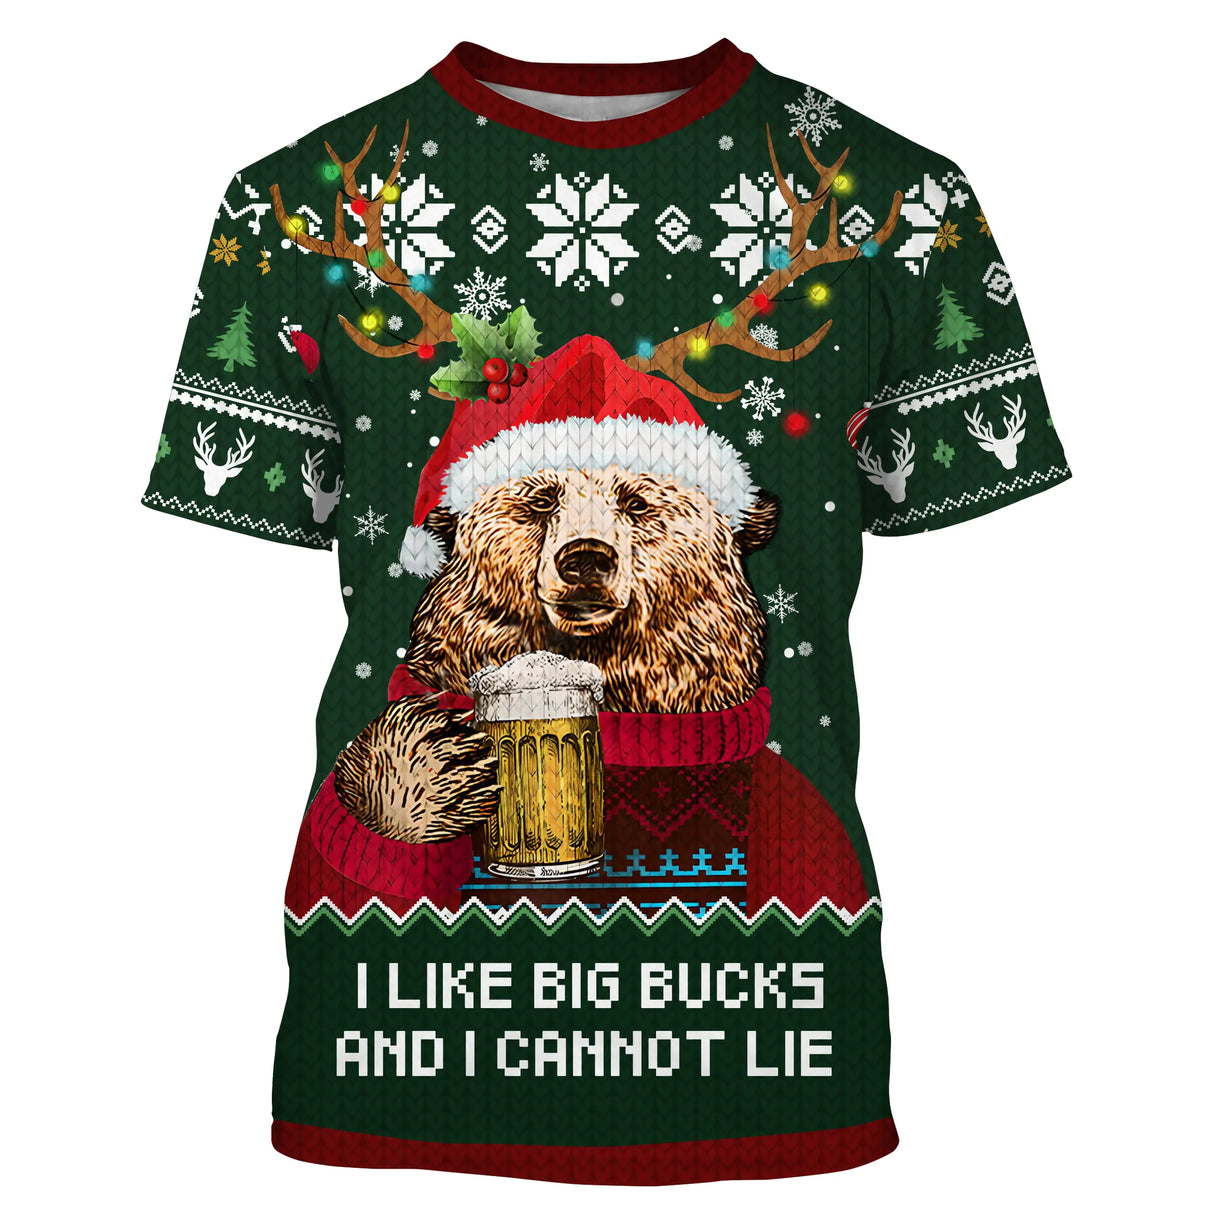 Grüner Weihnachtspullover, Bär trinkt Bier, Muster „I Like Big Bucks“, Weihnachtsgeschenk für die Familie – CT07112237